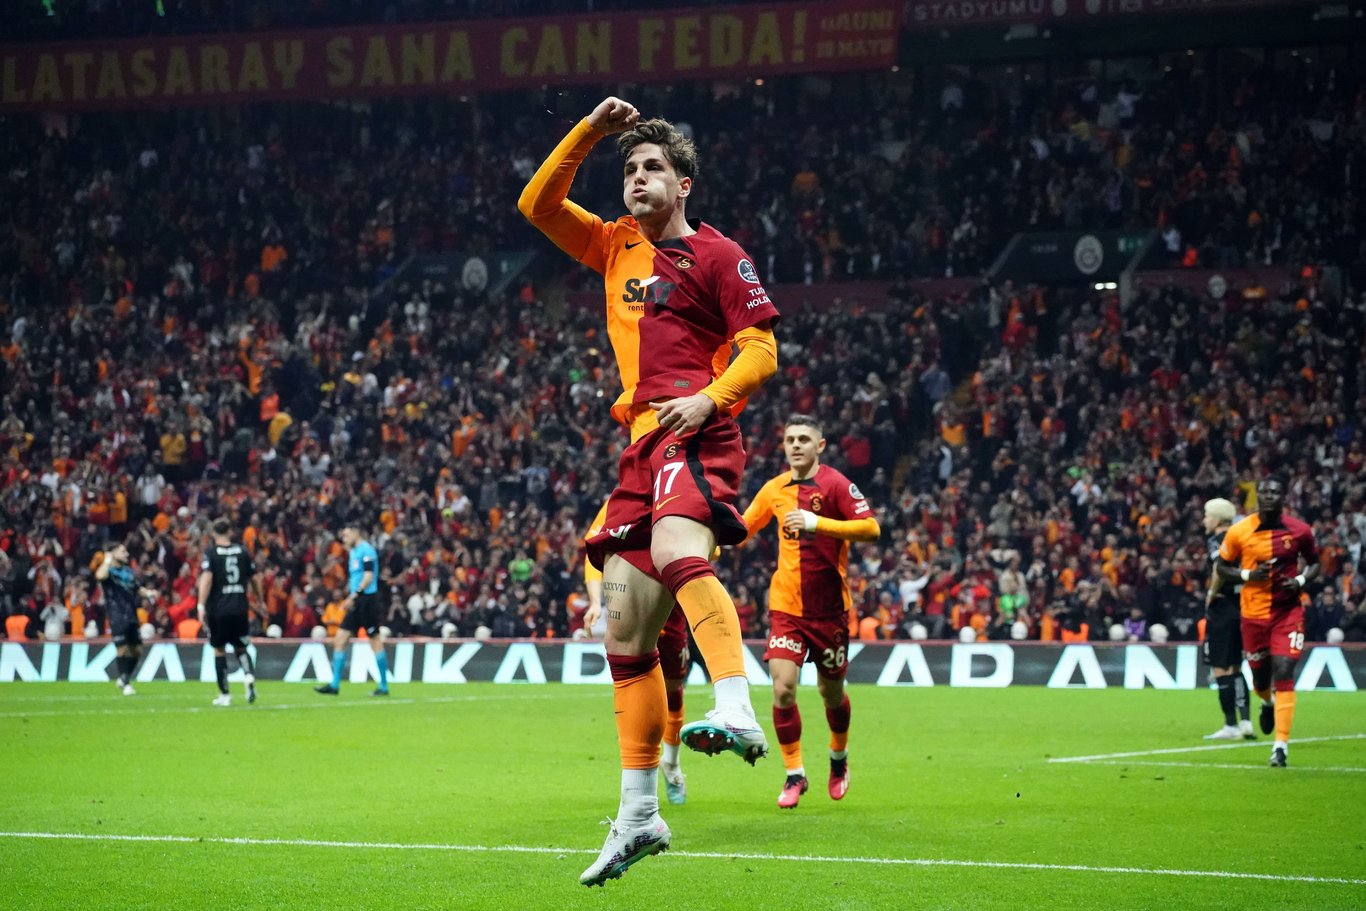 Nicolo Zaniolo'dan ayrılık kararı! - Son dakika Galatasaray haberleri